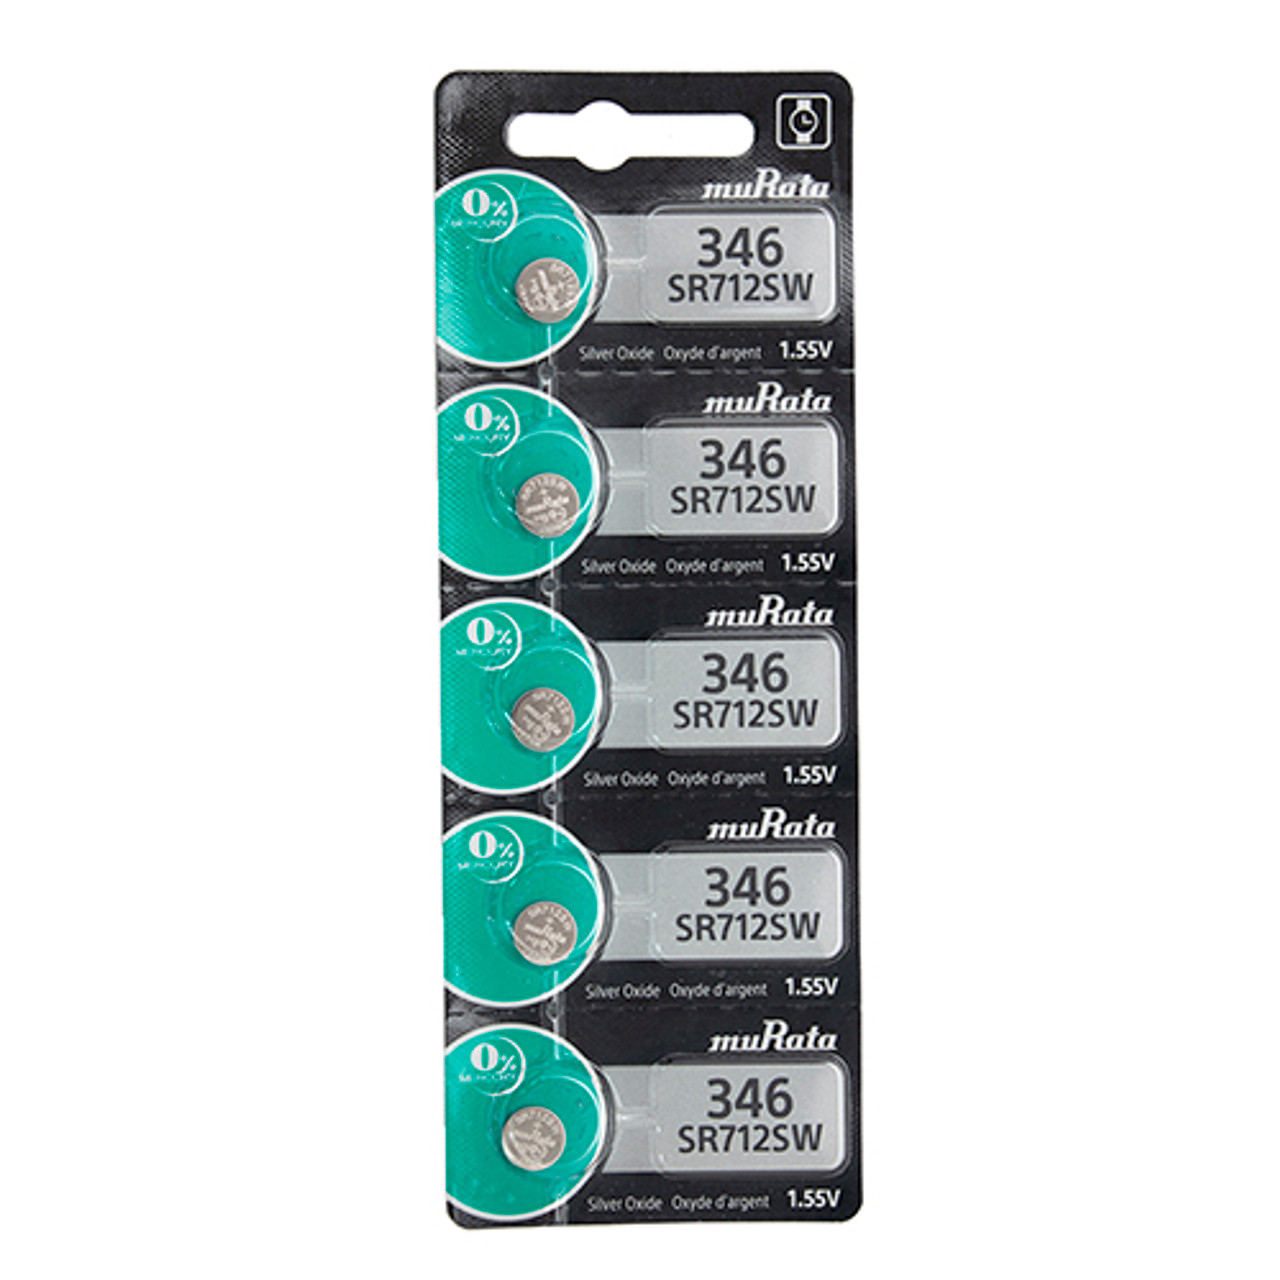 Sony® Murata Silver Oxide Watch Batteries - 346  (Pkg. of 5)